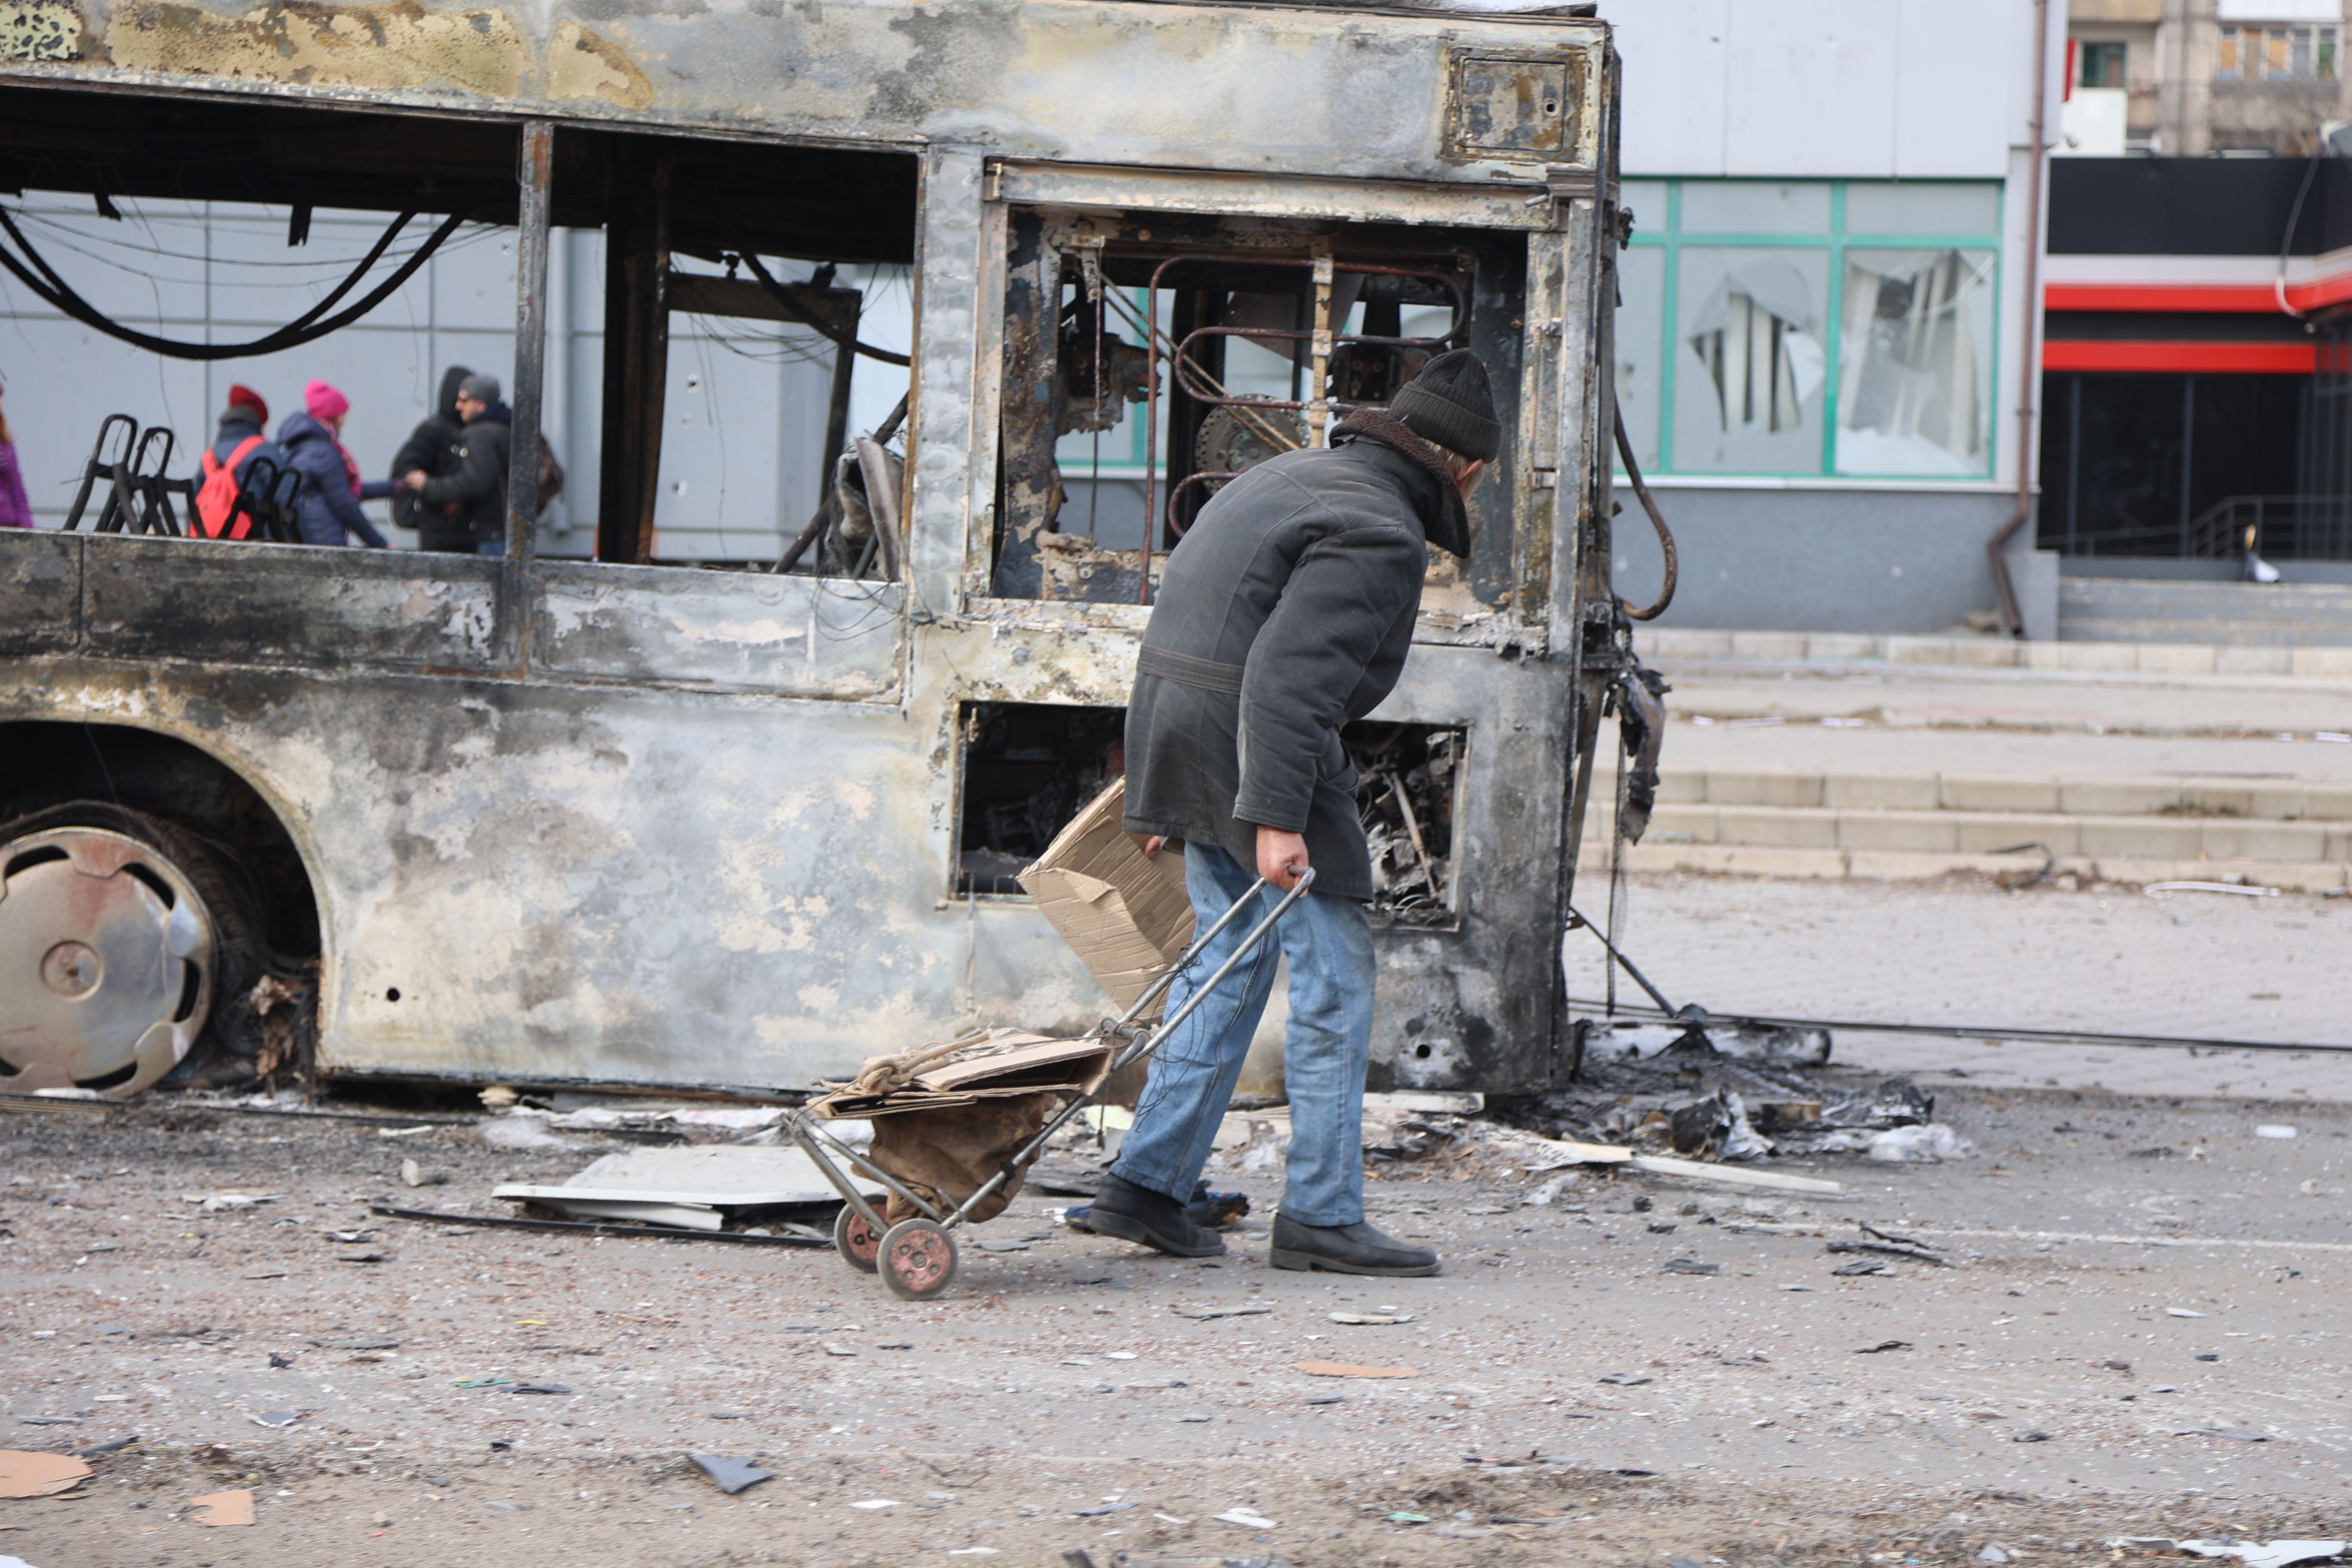 Widok zniszczonych budynków i pojazdów po zbombardowaniu ukraińskiego miasta Mariupol, będącego pod kontrolą armii rosyjskiej i prorosyjskich separatystów, 29 marca.